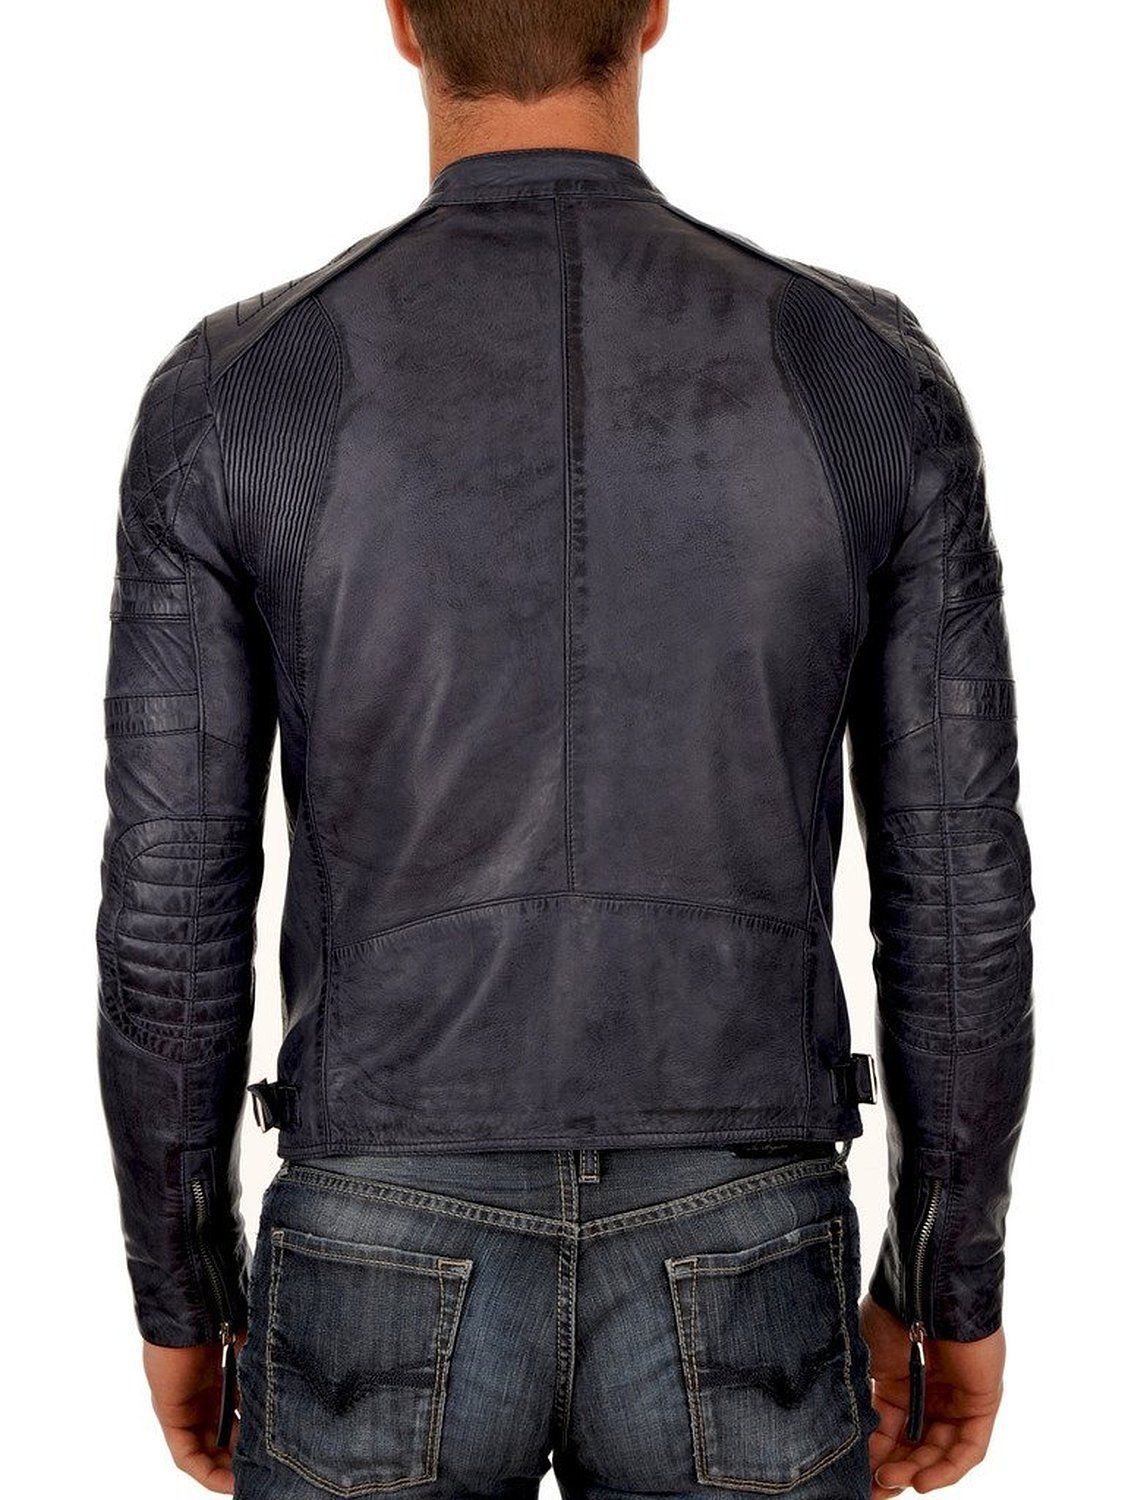 Urbanhides Men’s Leather Biker Jacket